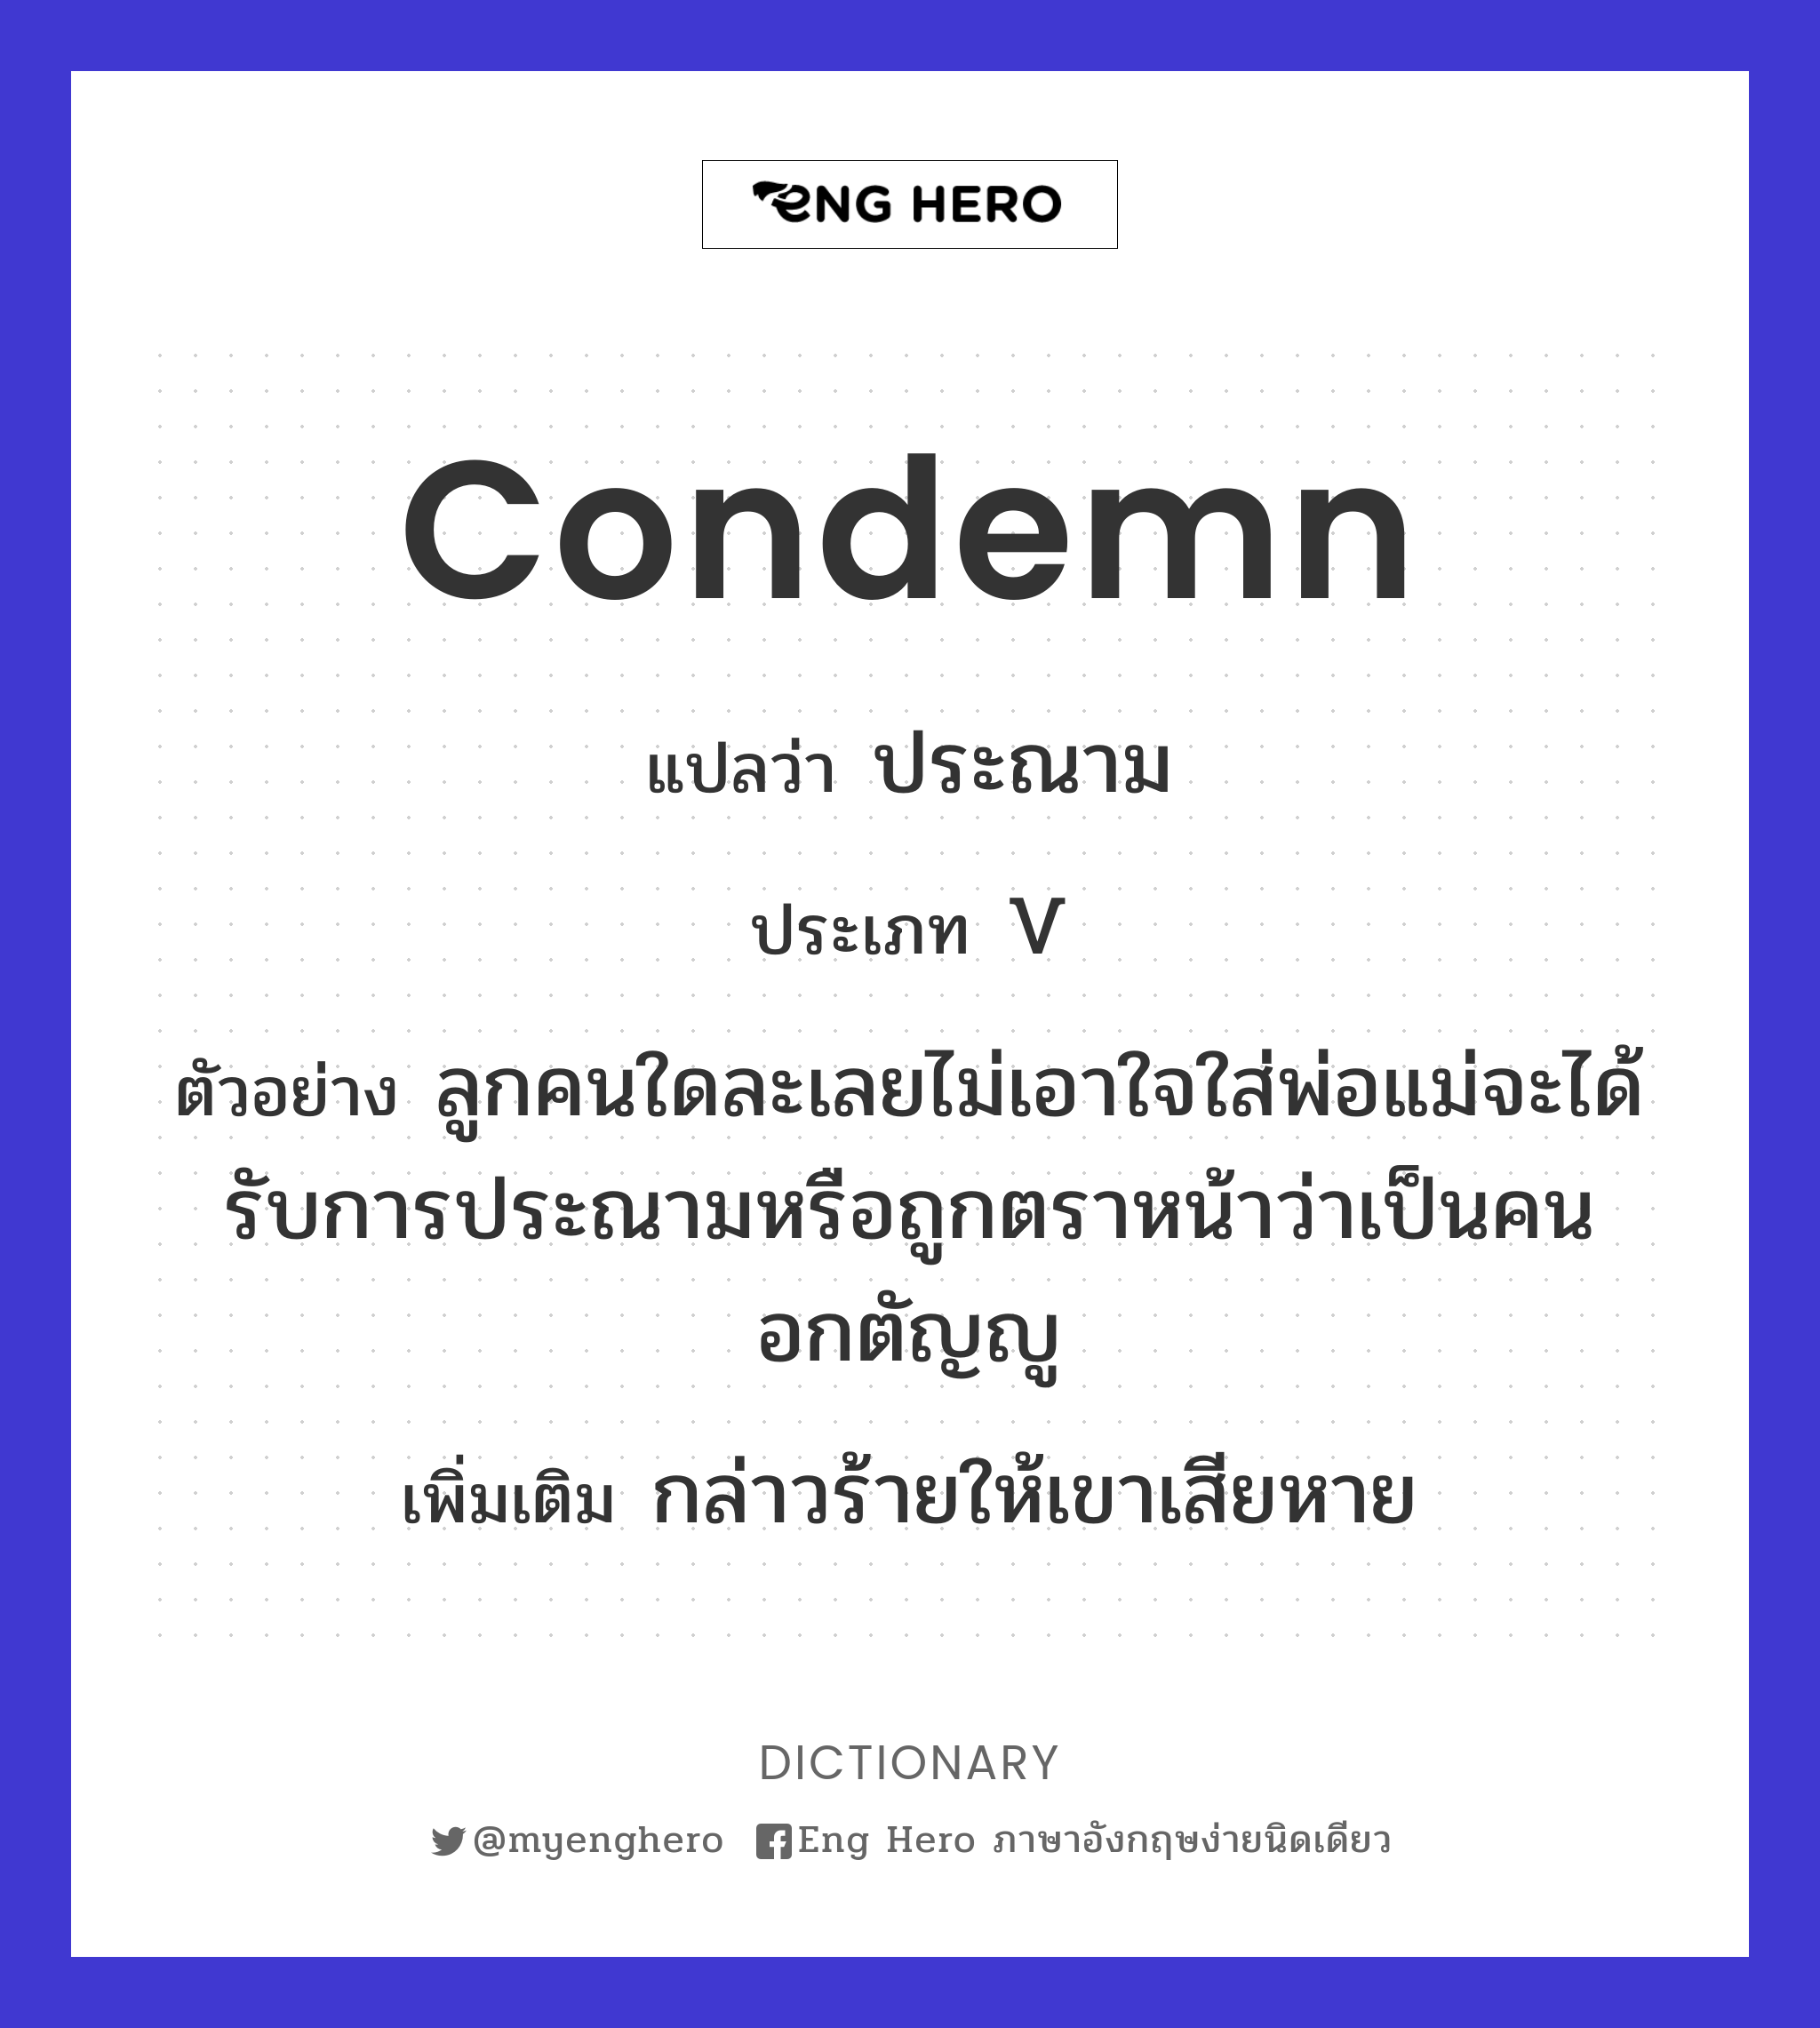 condemn